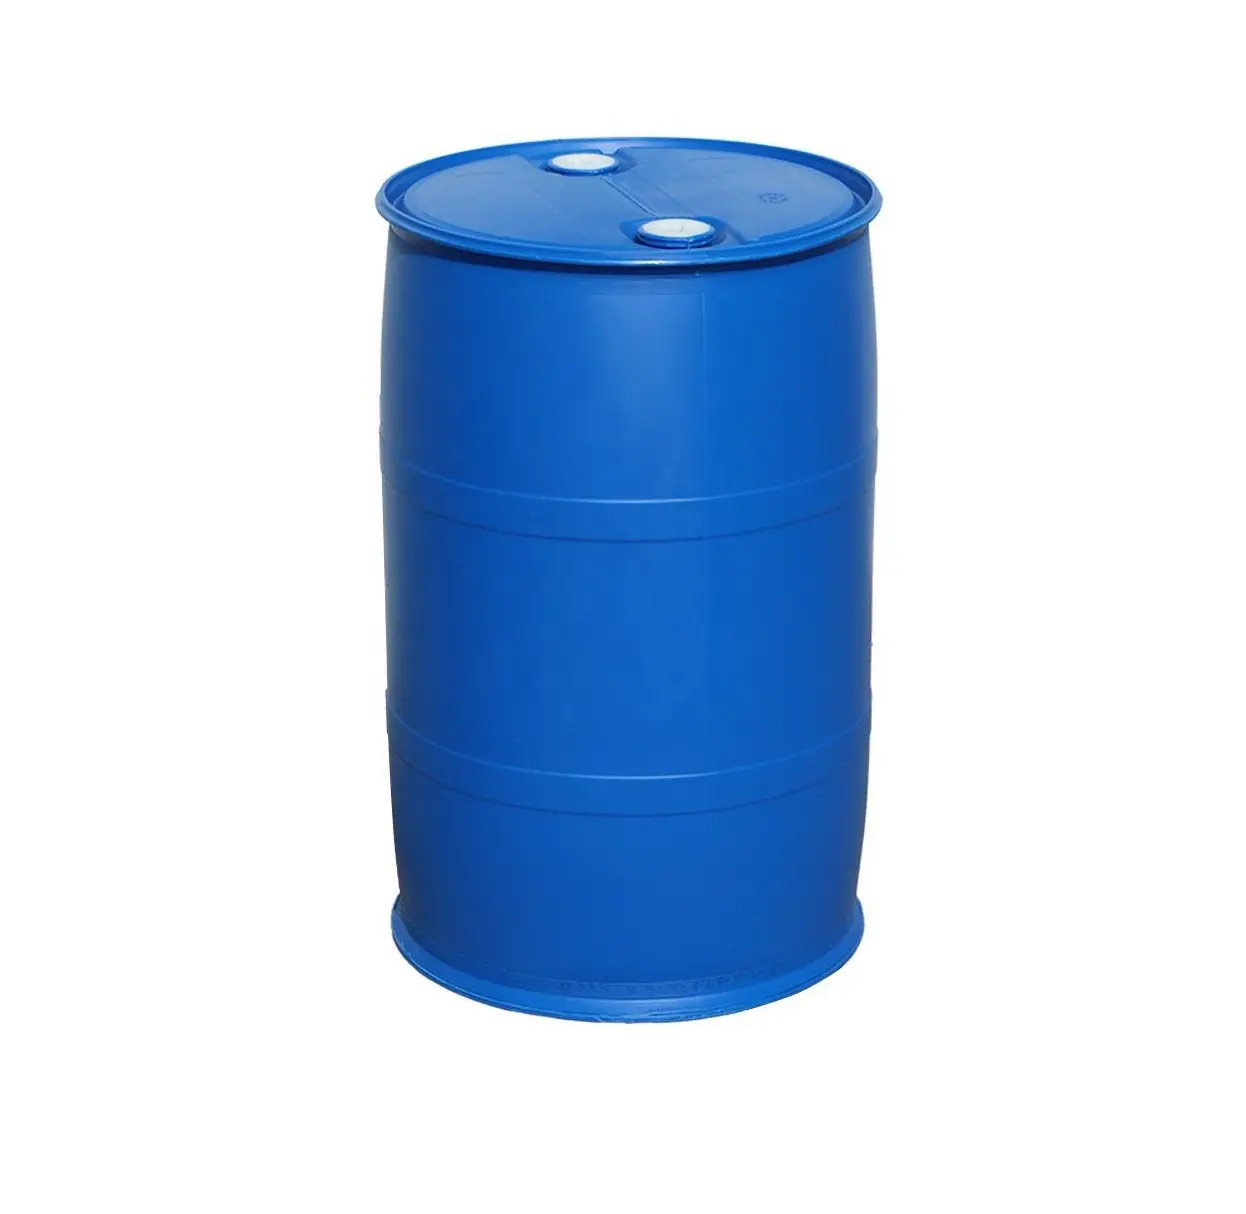 طبل بلاستيكي كيميائي بسعر المصنع للطعام بمقبض وعلب دلو زرقاء ، طبل بلاستيكي 200 لتر